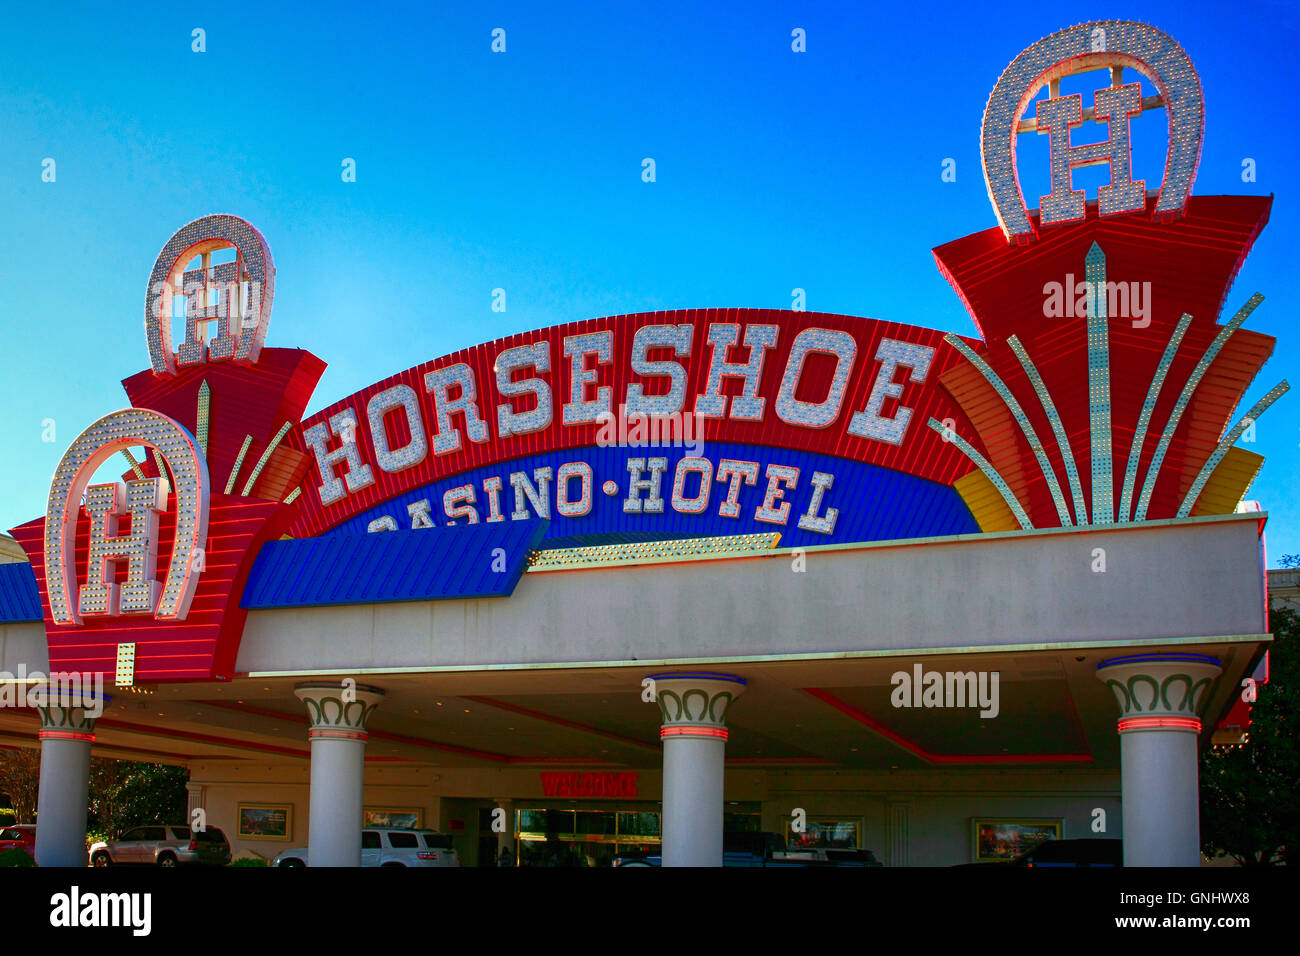 Horseshoe Casino & Hotel Tunica